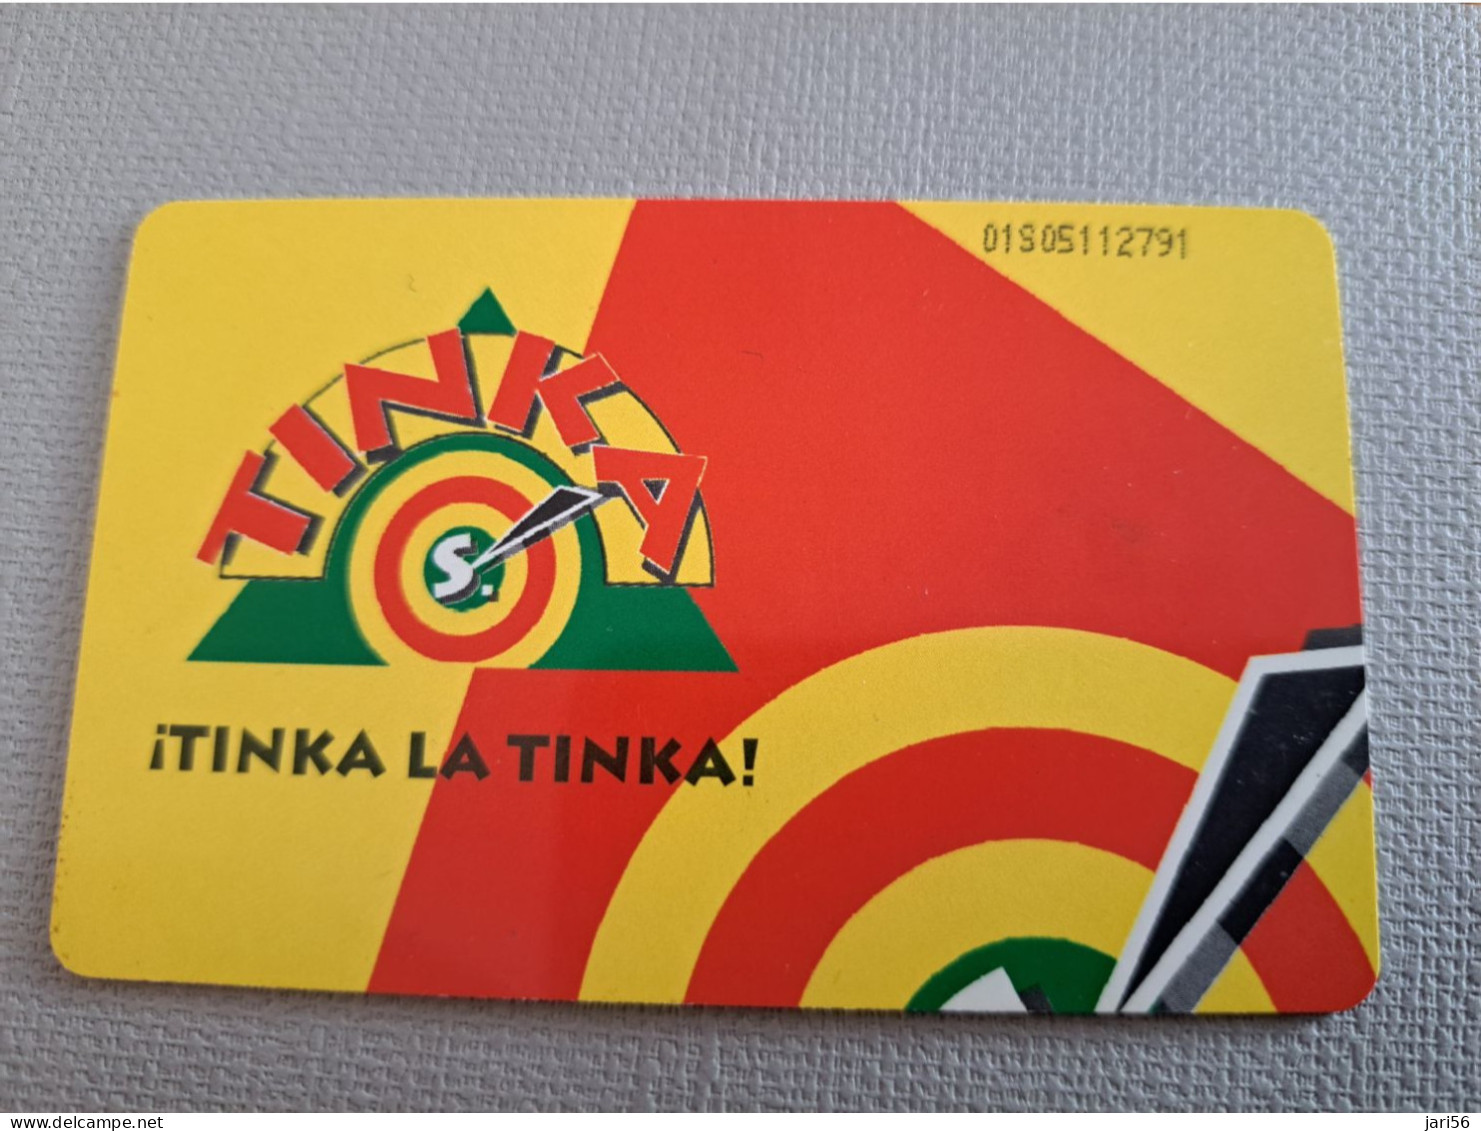 PERU   CHIPCARD   5,00 $ / TINKA LA TINKA/ NICE LADY IN COSTUME     Fine Used Card  ** 15130** - Perù